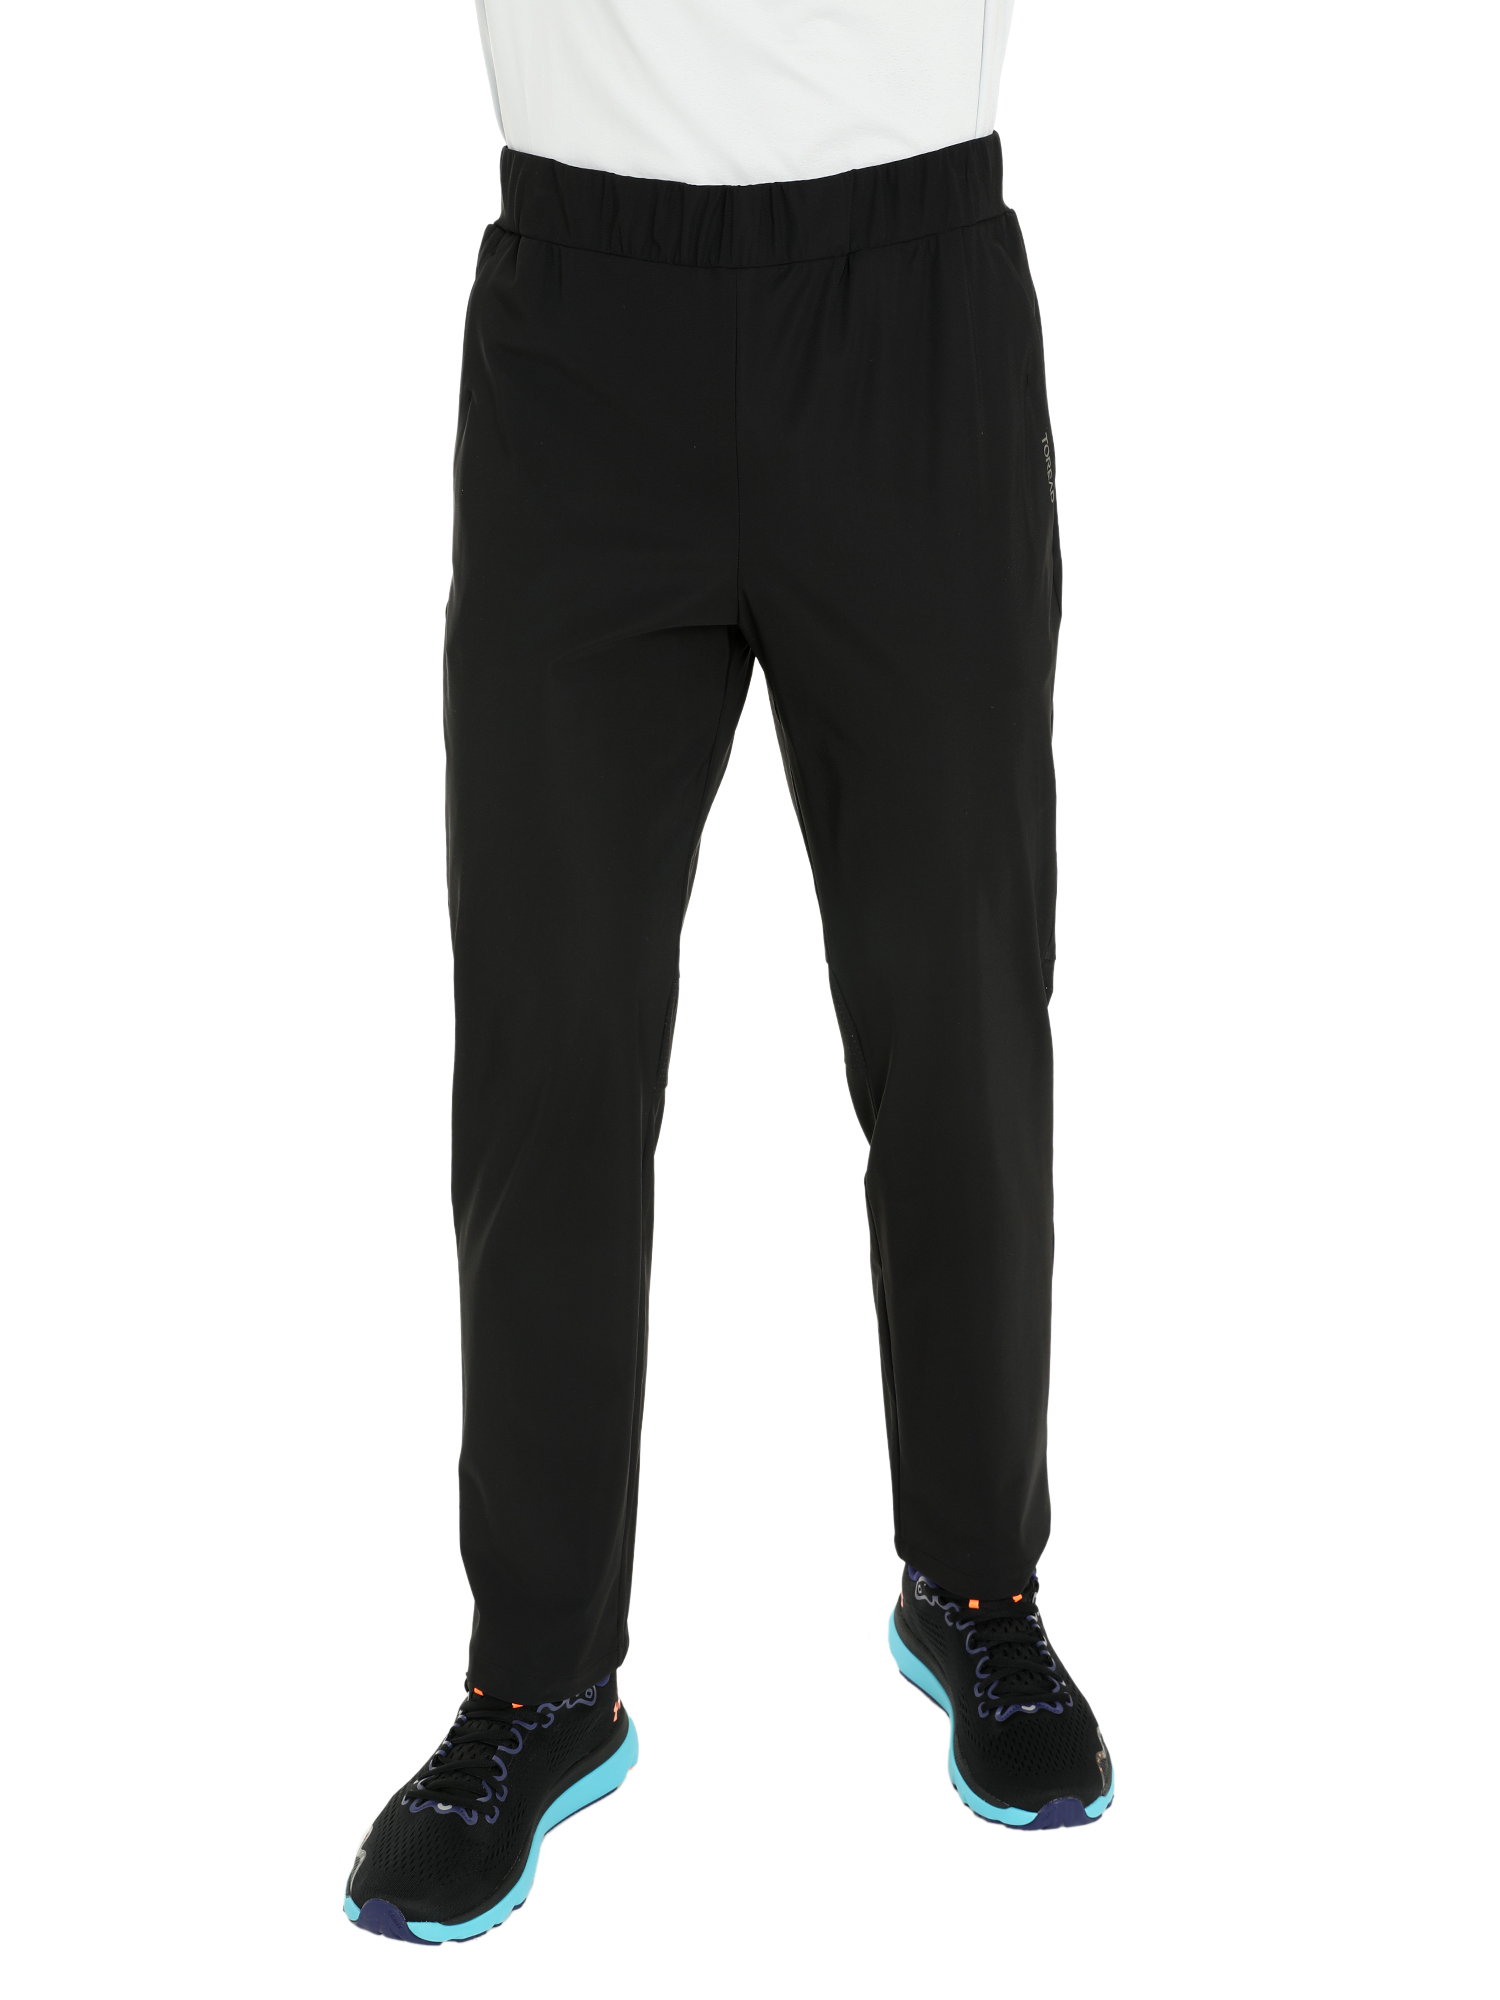 Спортивные брюки мужские Toread Men's Running Training Pants черные M